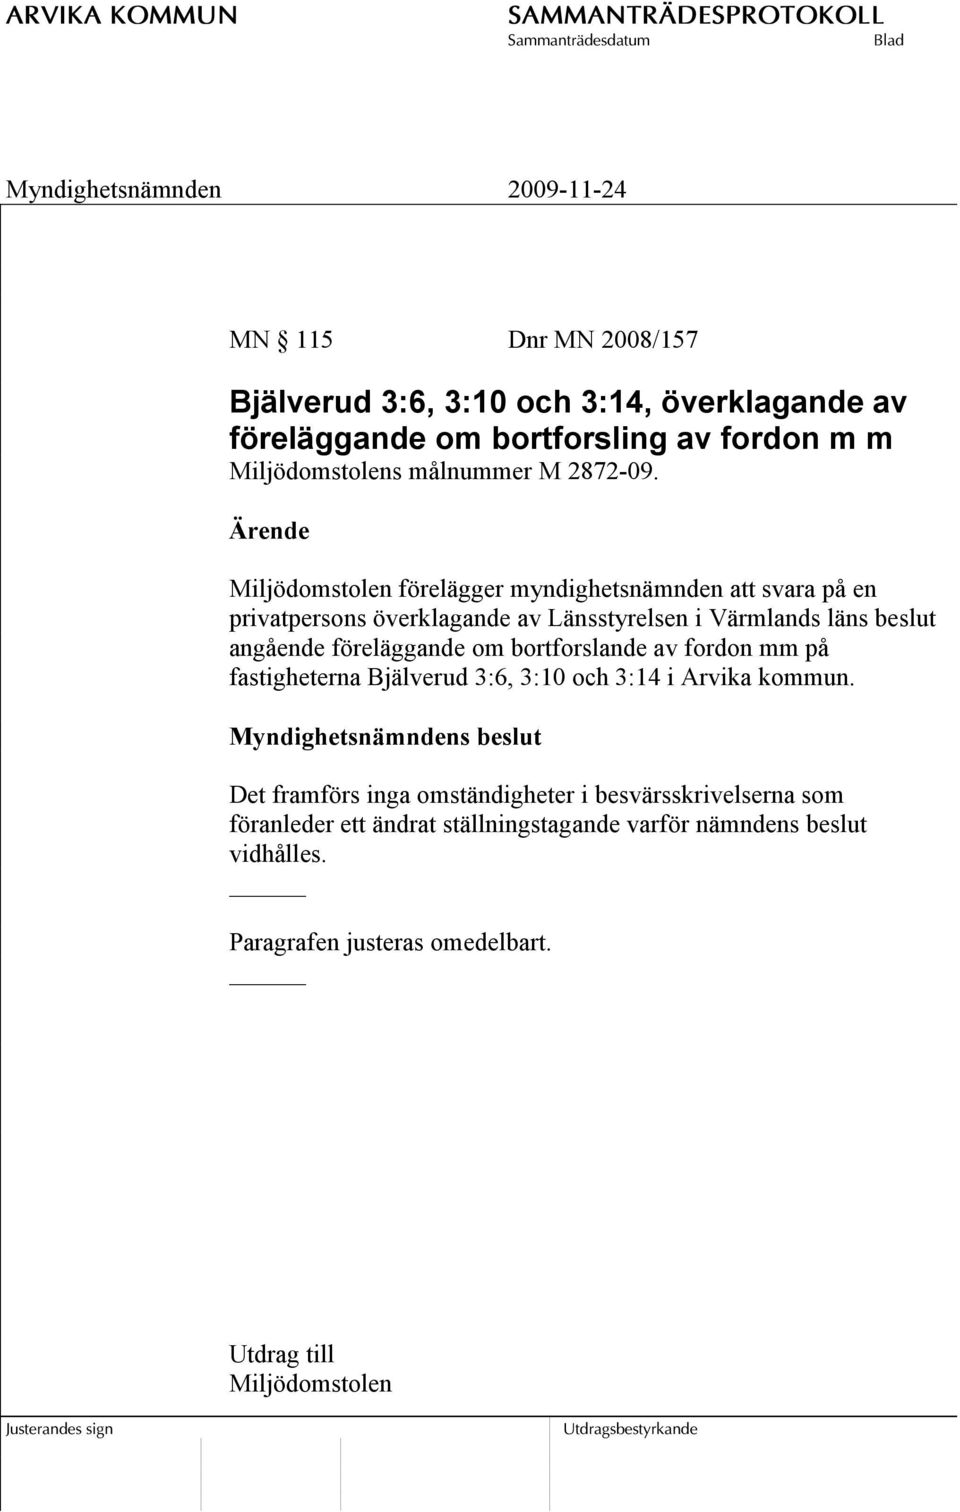 föreläggande om bortforslande av fordon mm på fastigheterna Bjälverud 3:6, 3:10 och 3:14 i Arvika kommun.